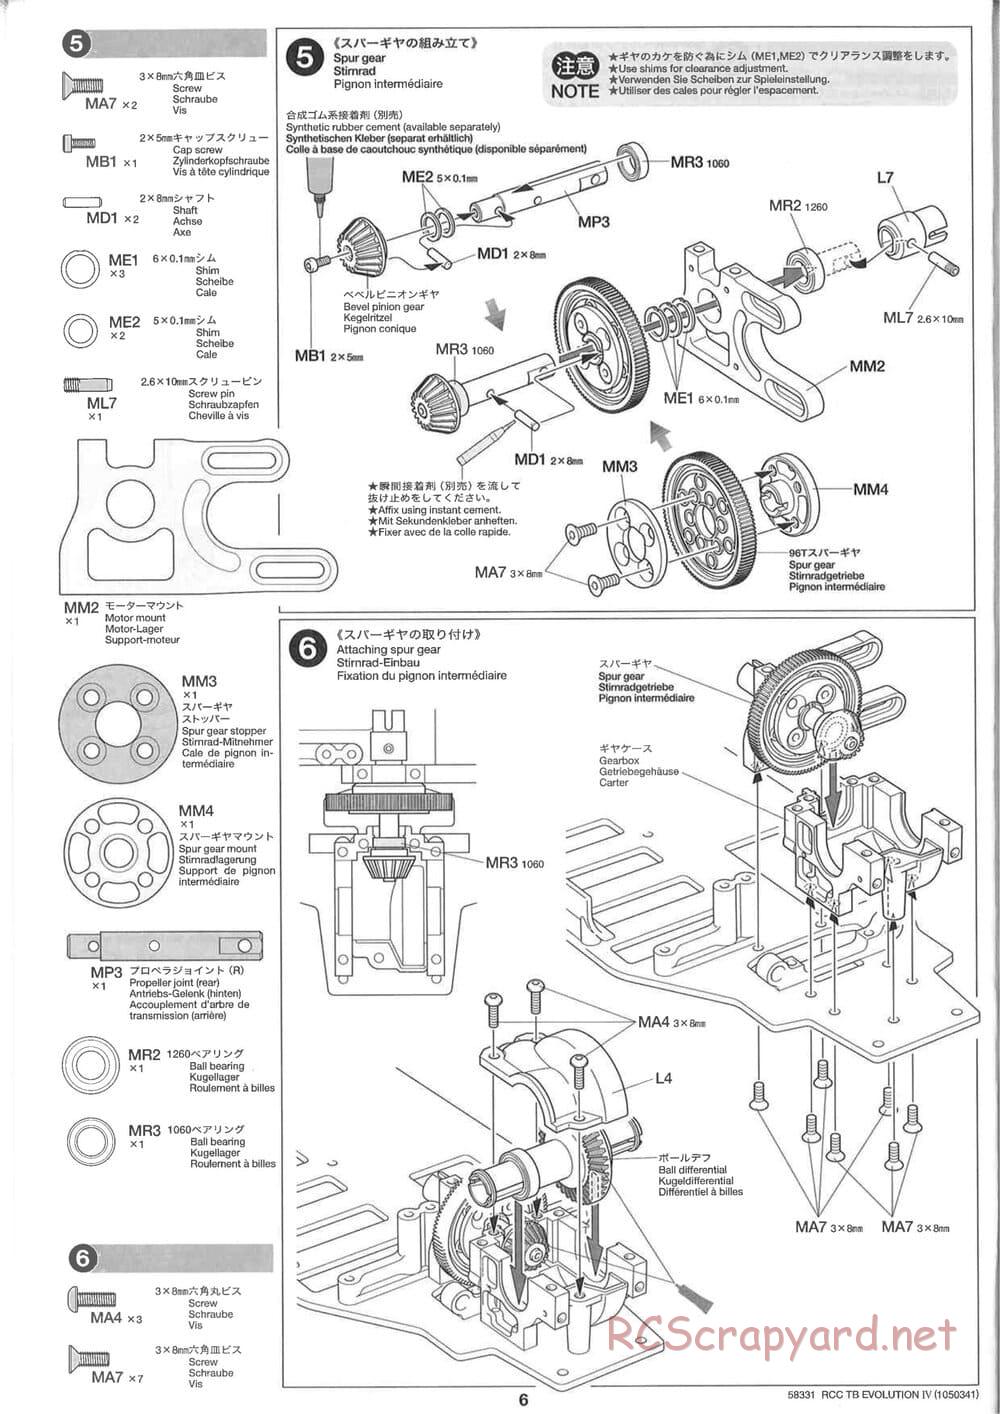 Tamiya - TB Evolution IV Chassis - Manual - Page 6